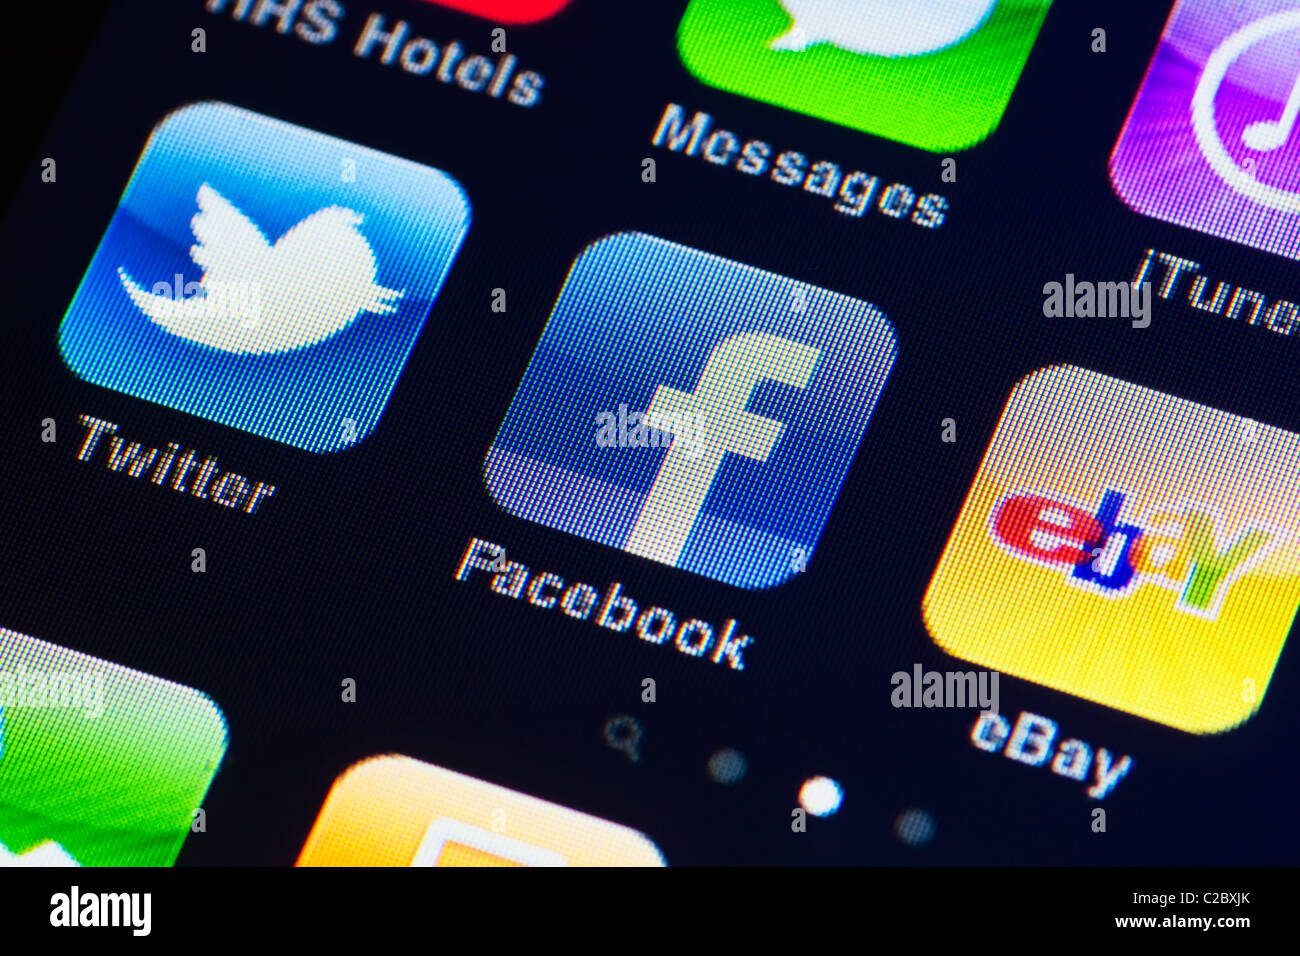 Detailbild des Iphone Touchscreens Makro. Display zeigt apps von Facebook, twitter, Ebay, Itunes und Nachrichten Stockfoto